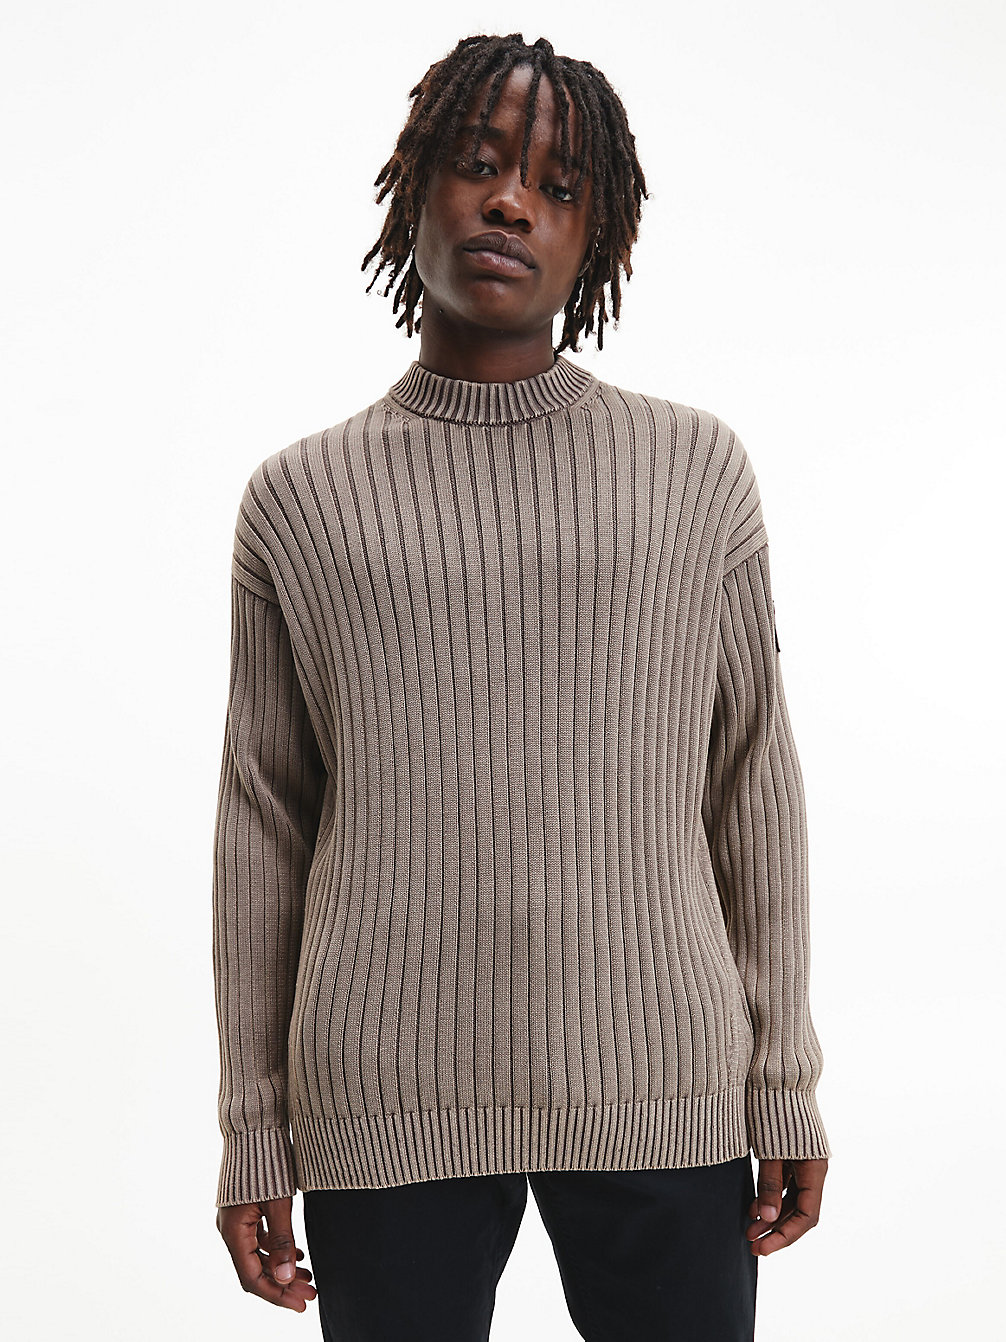 WARM TOFFEE > Swobodny Sweter Z Czesanej Bawełny > undefined Mężczyźni - Calvin Klein